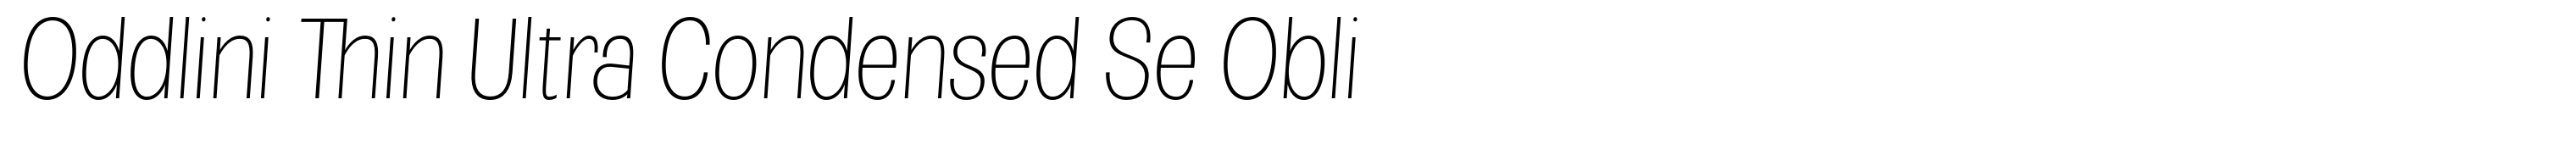 Oddlini Thin Ultra Condensed Se Obli